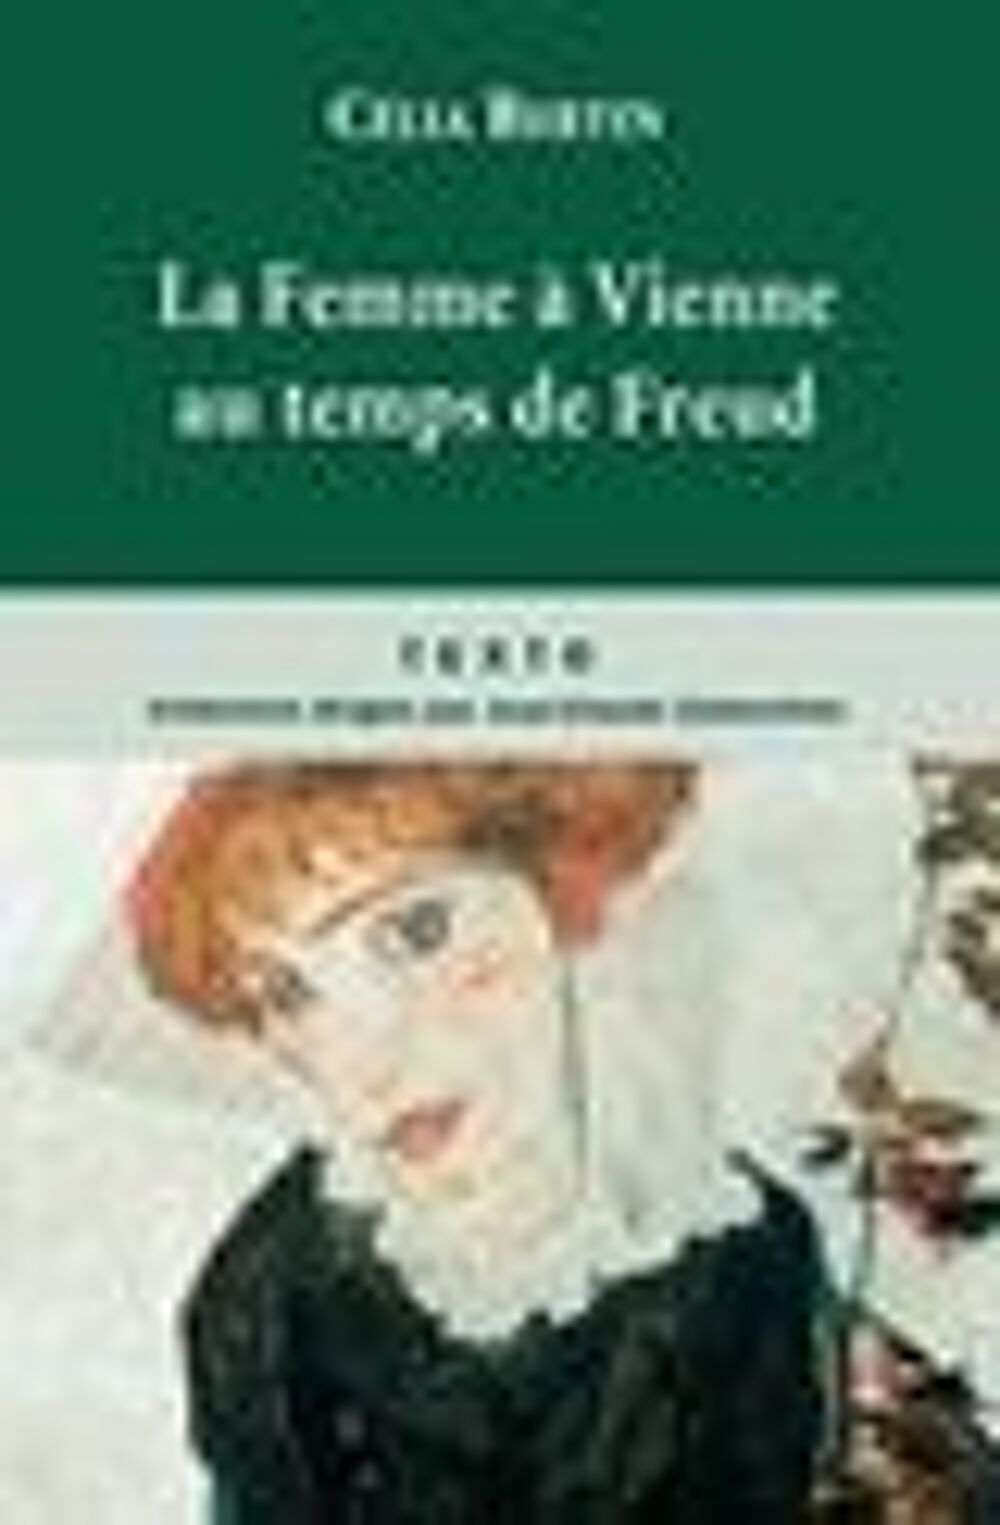 La femme &agrave; Vienne au temps de Freud Livres et BD